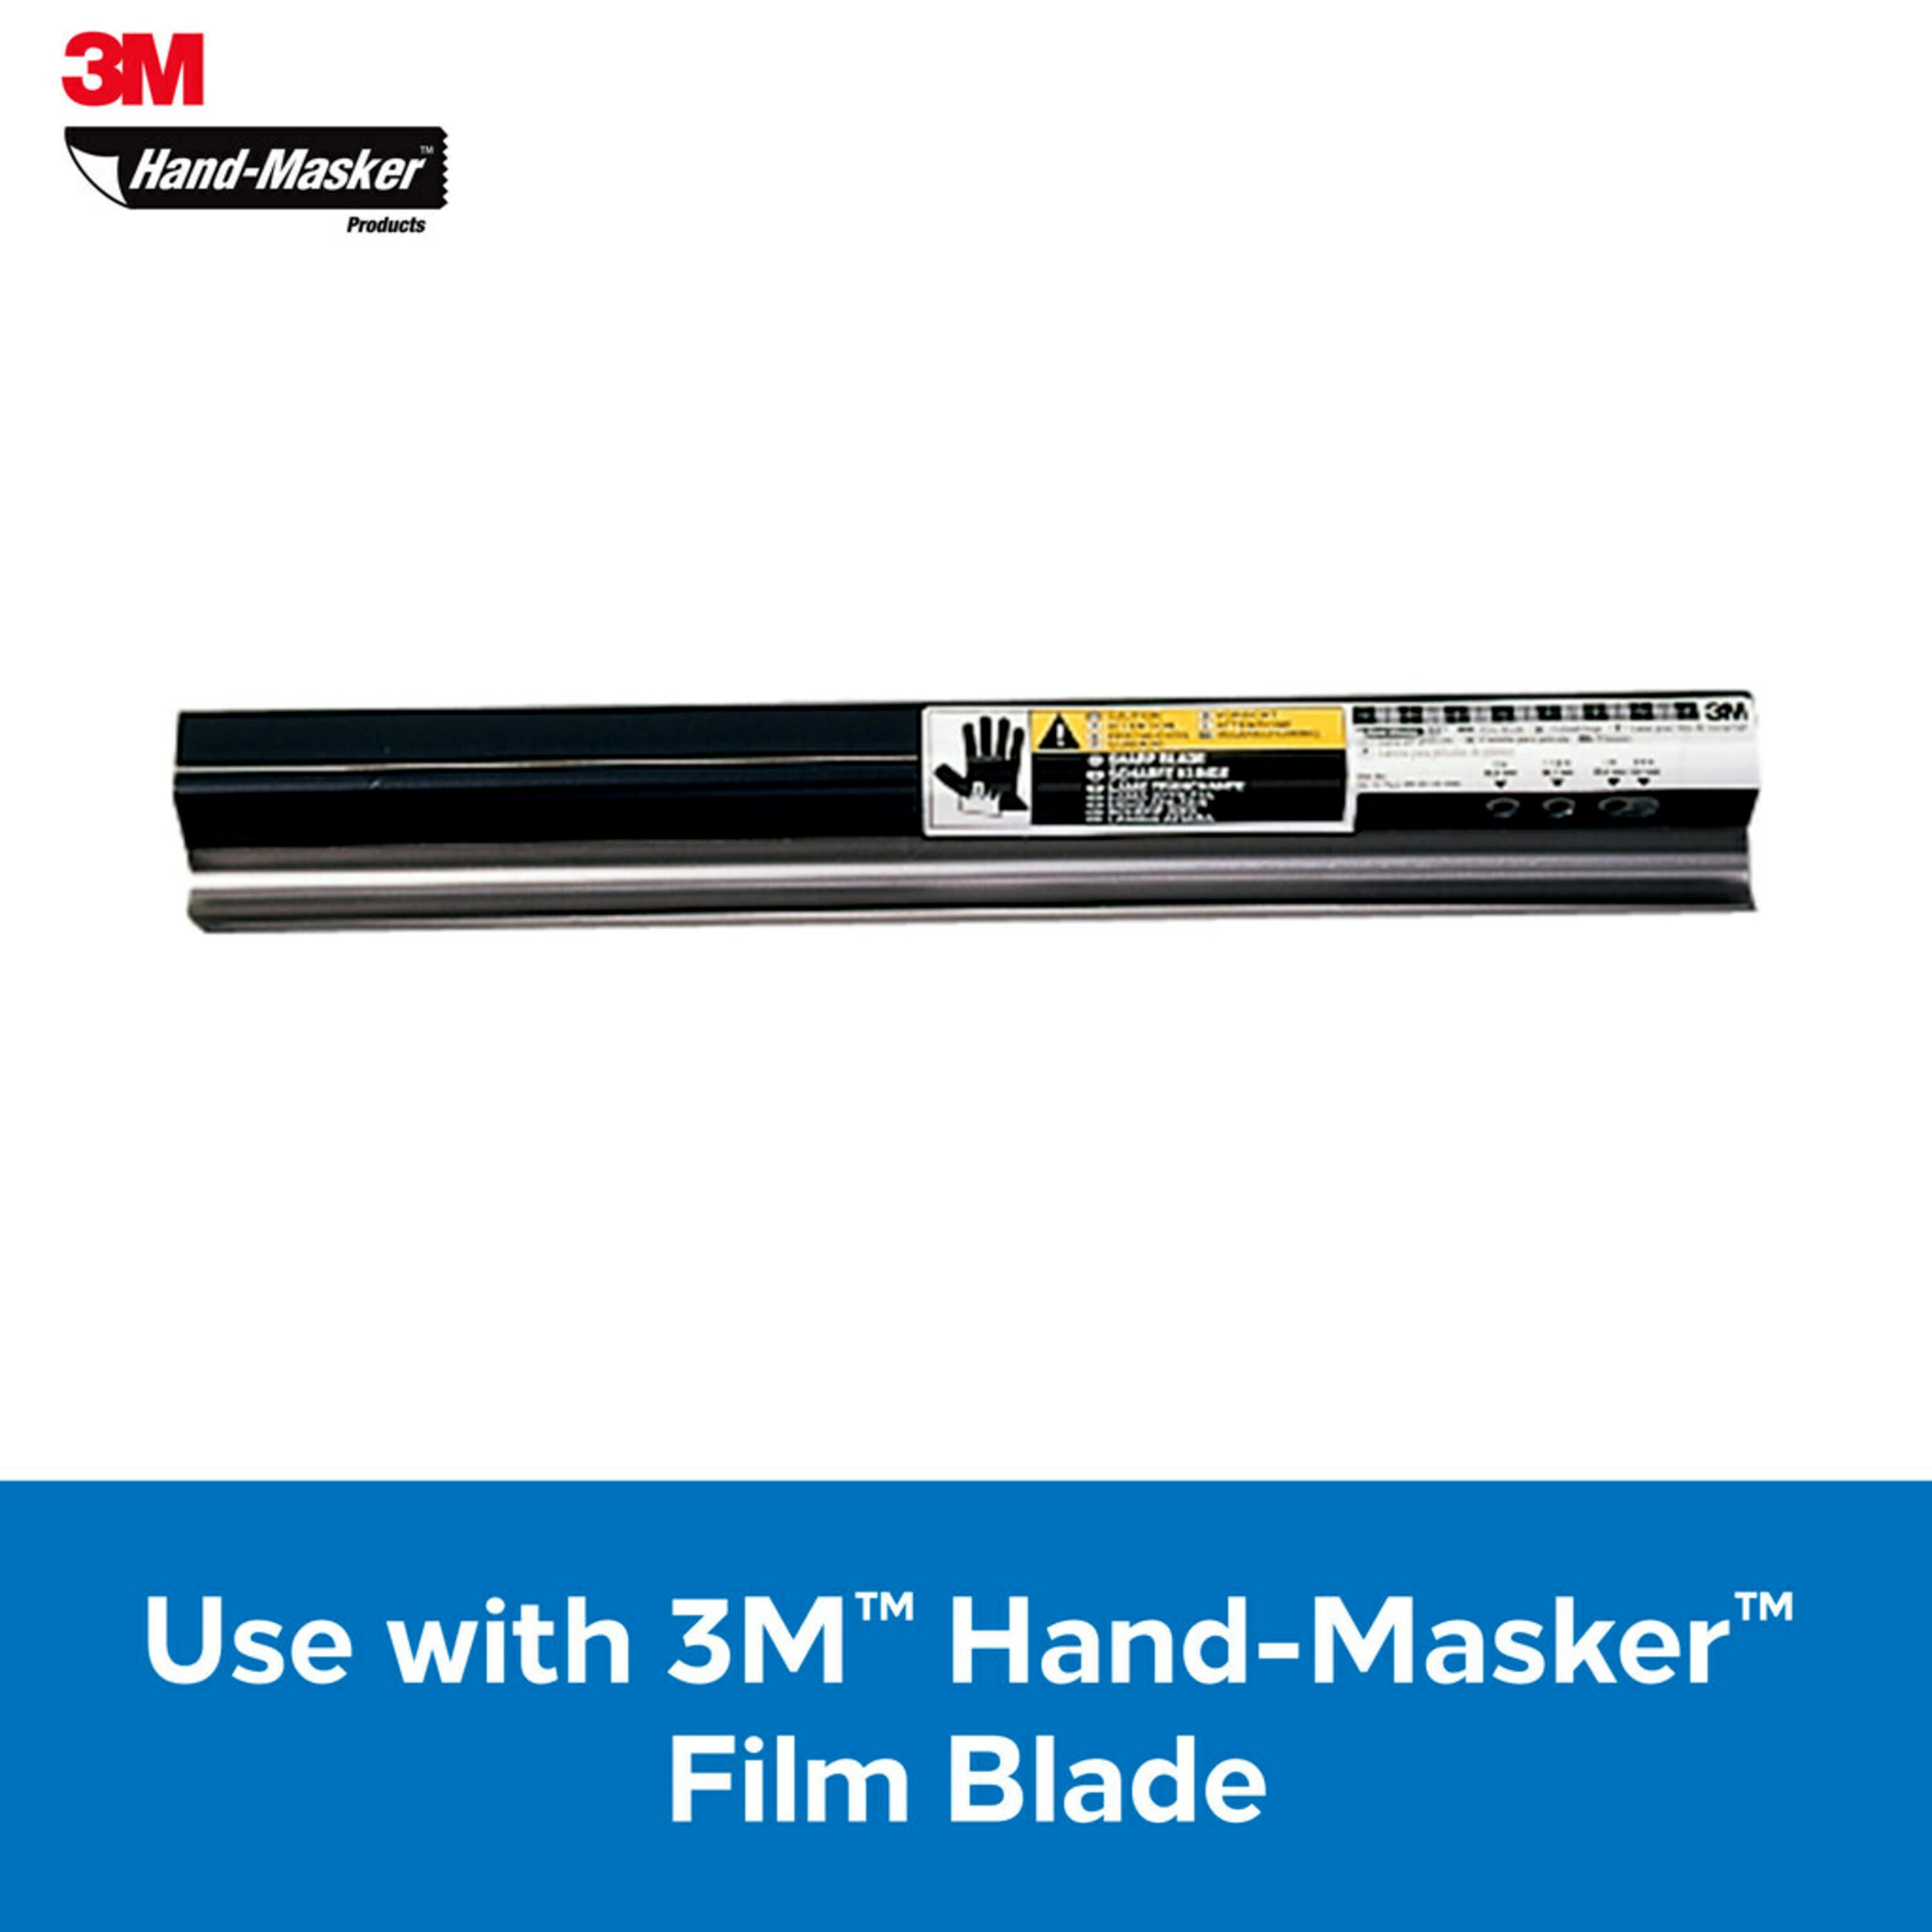 Hand-Masker Painter's Tape and Masking Film Dispenser (1 Kit)